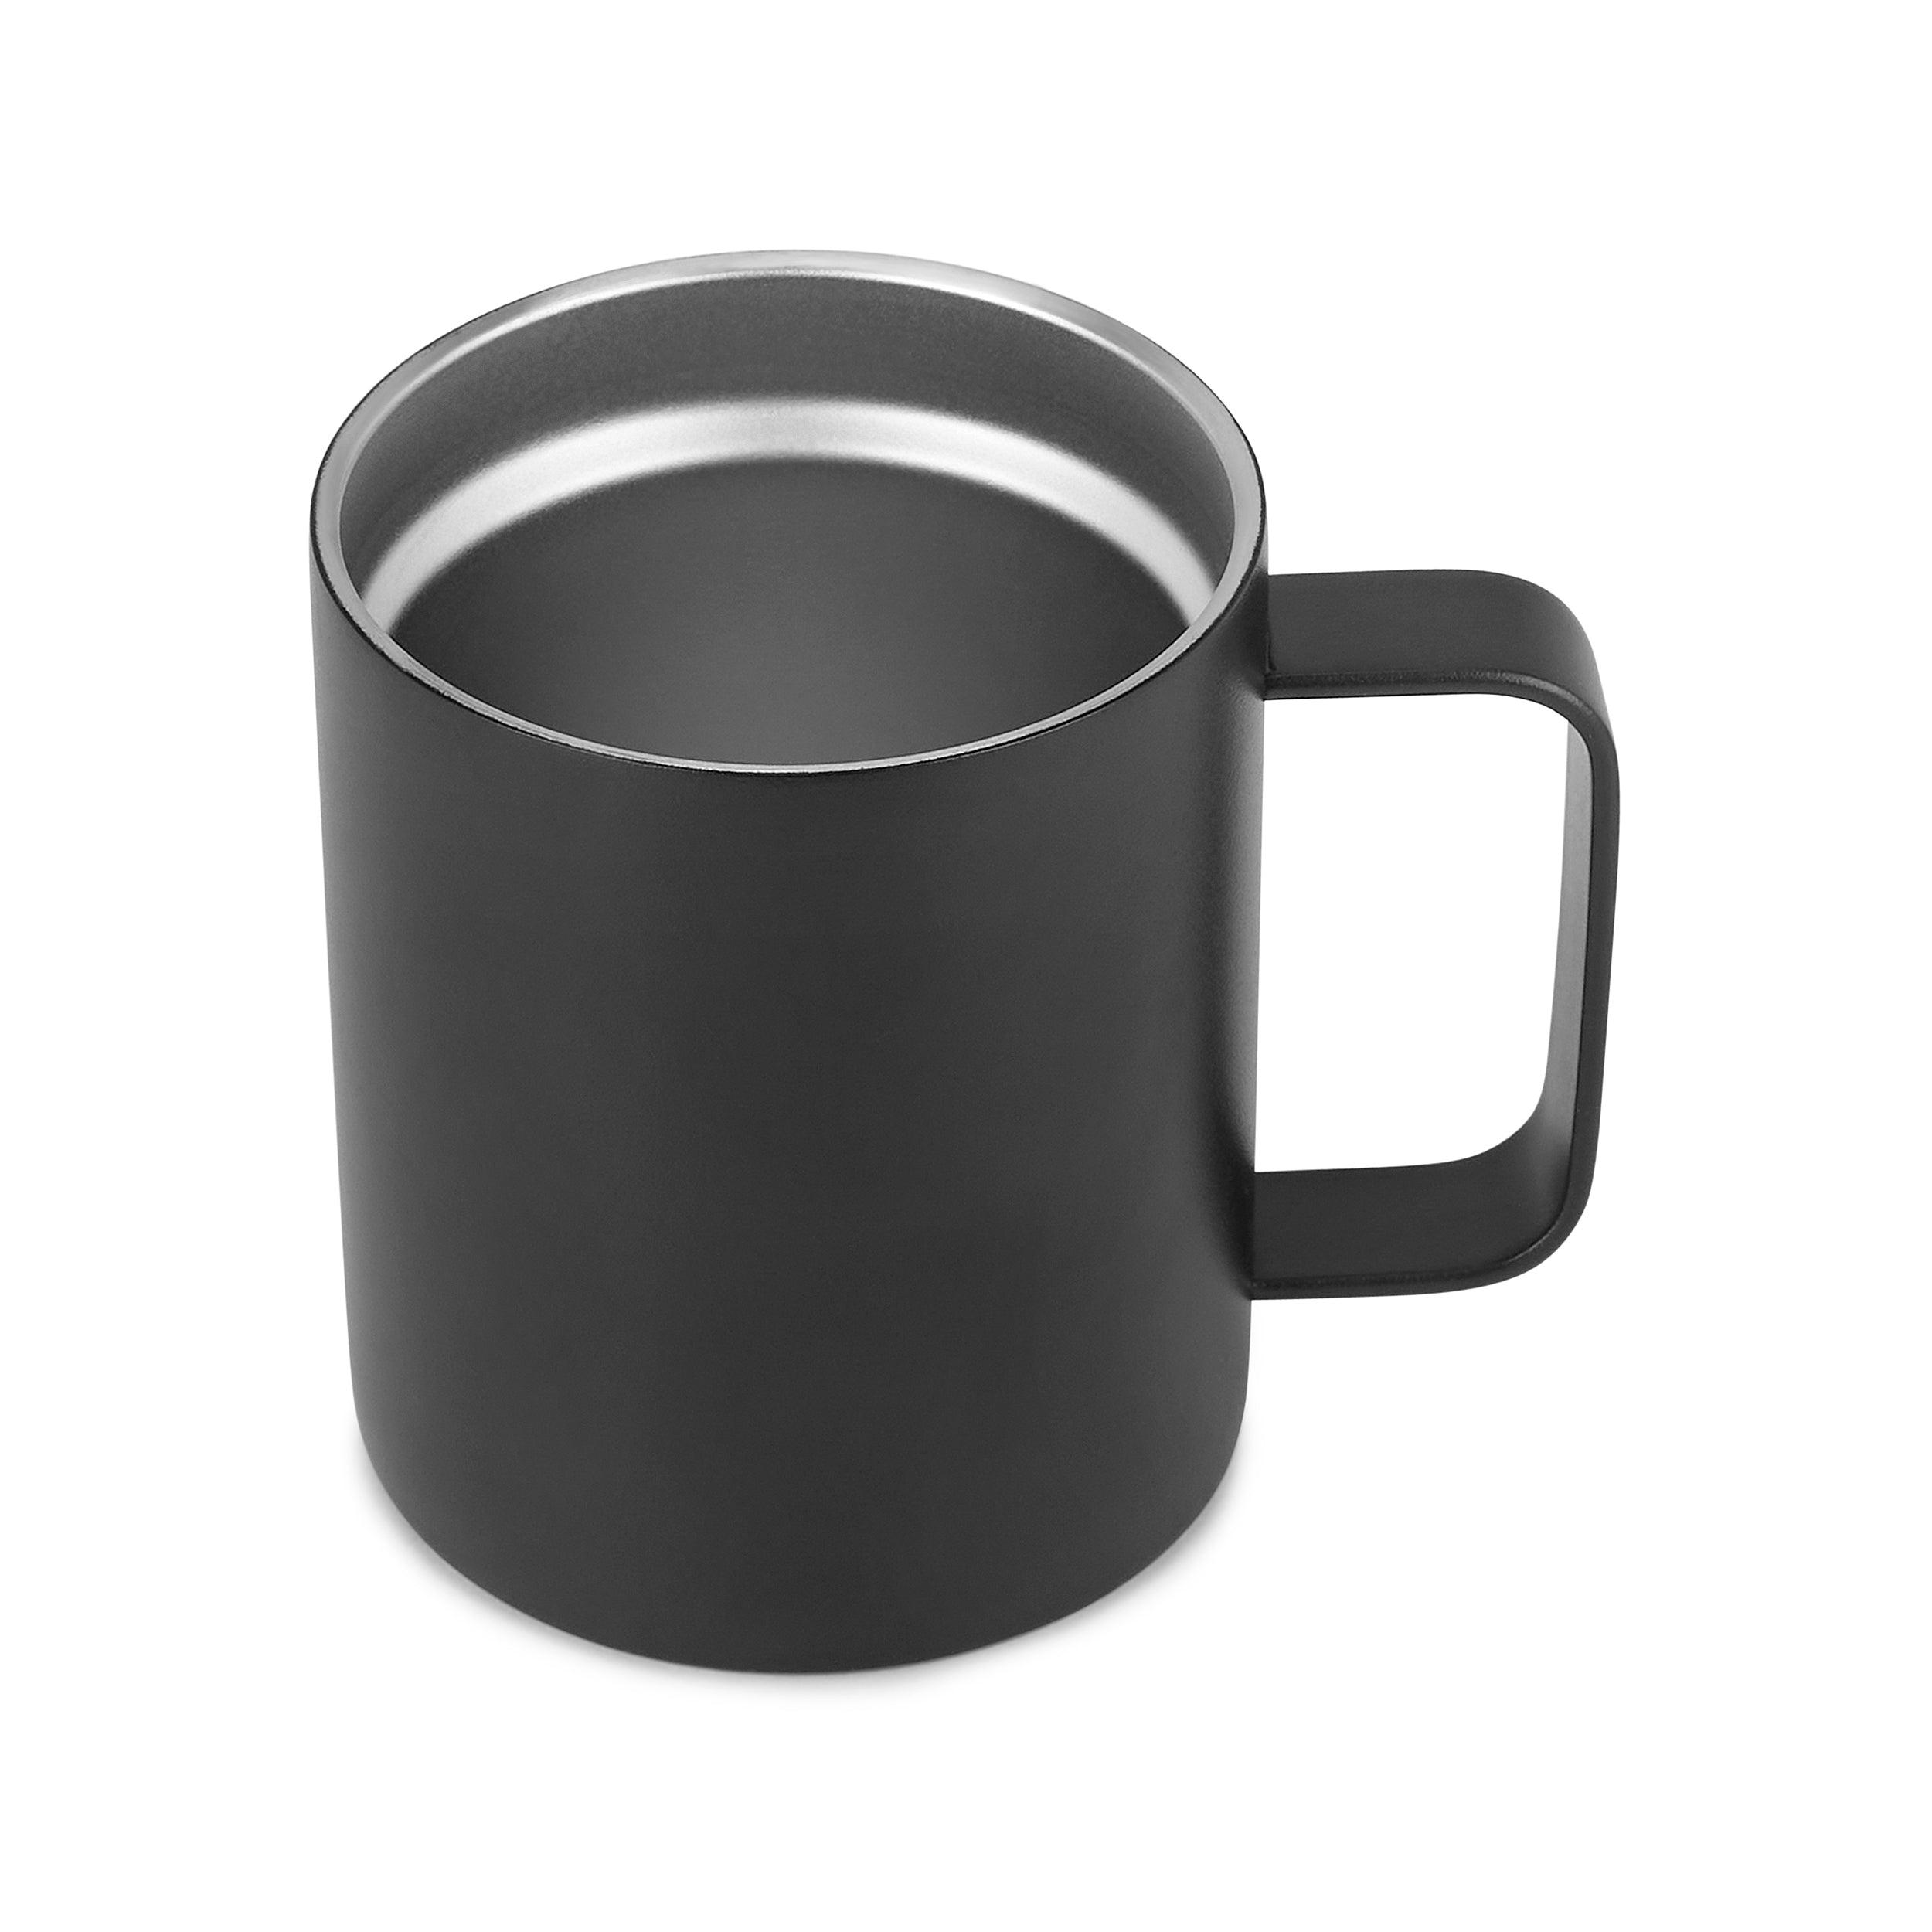 12oz Coffee Mug For Basketball